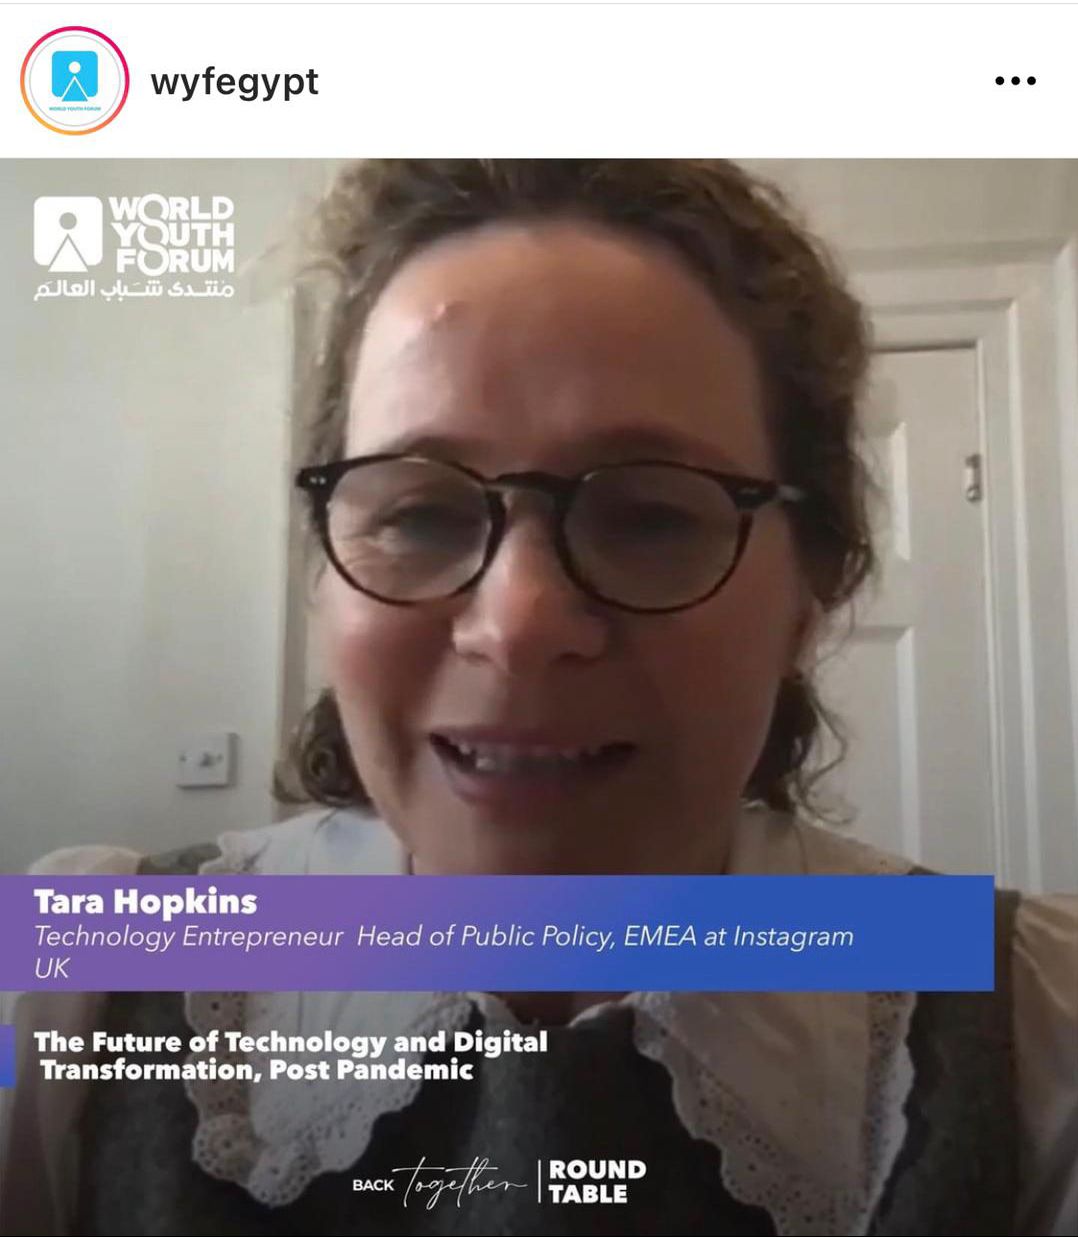 تارا هوبكنز مديرة السياسة العامة في Instagram للشرق الأوسط وأوروبا وإفريقيا